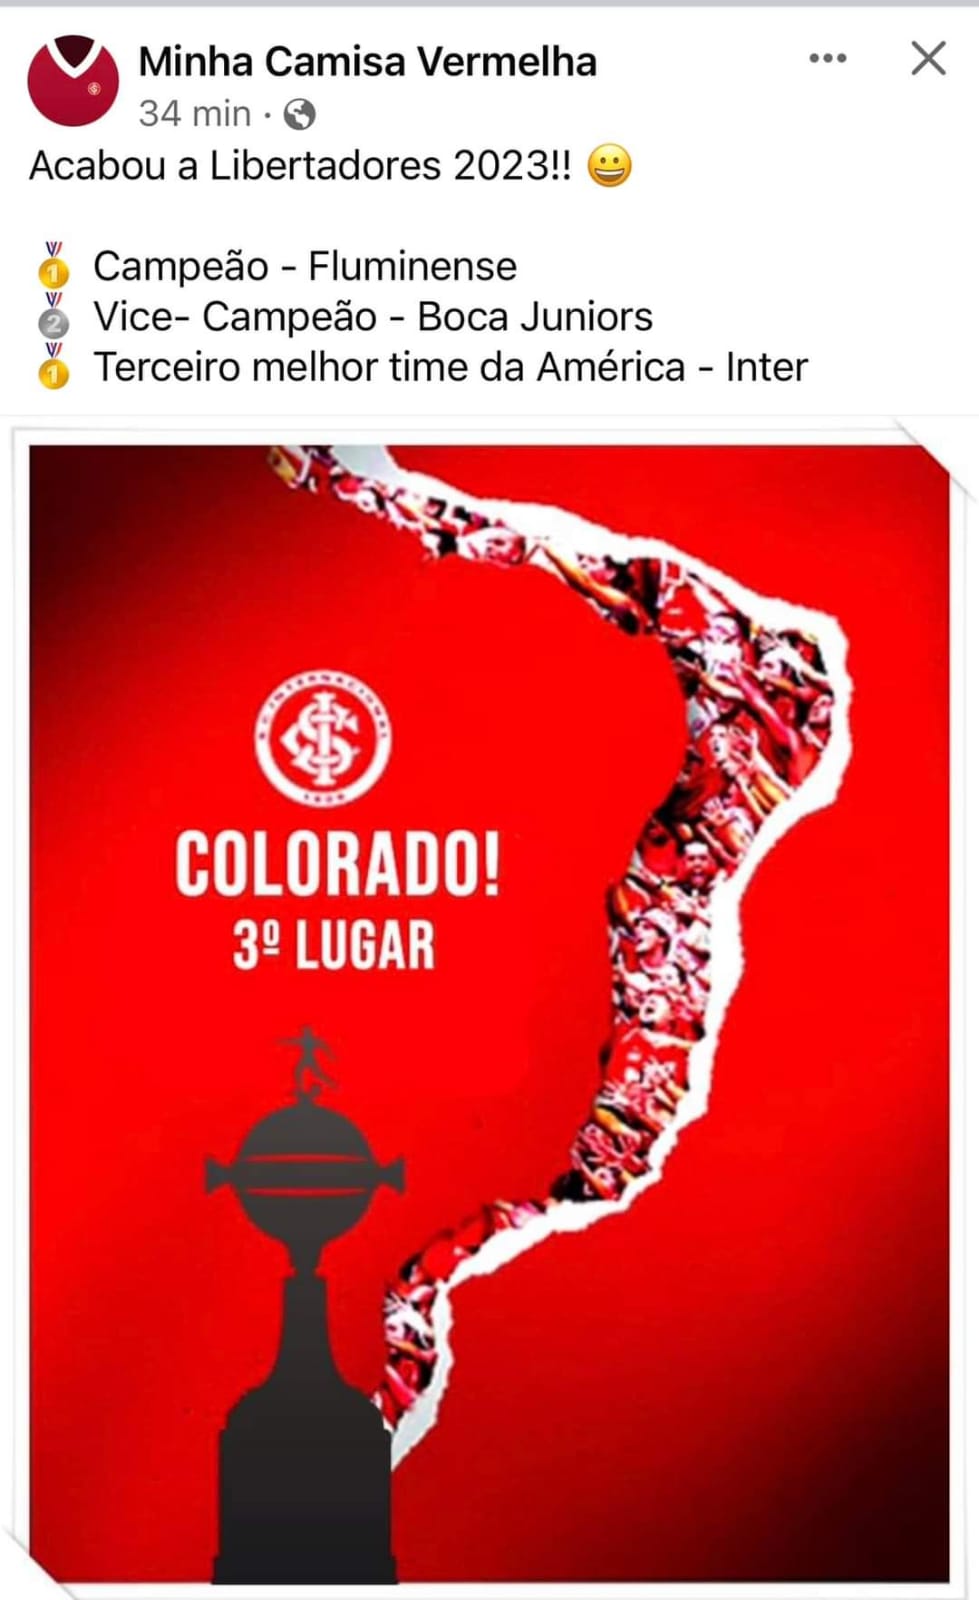 Minha Camisa Vermelha - Agora é oficial! 😂 Grêmio não tem Mundial